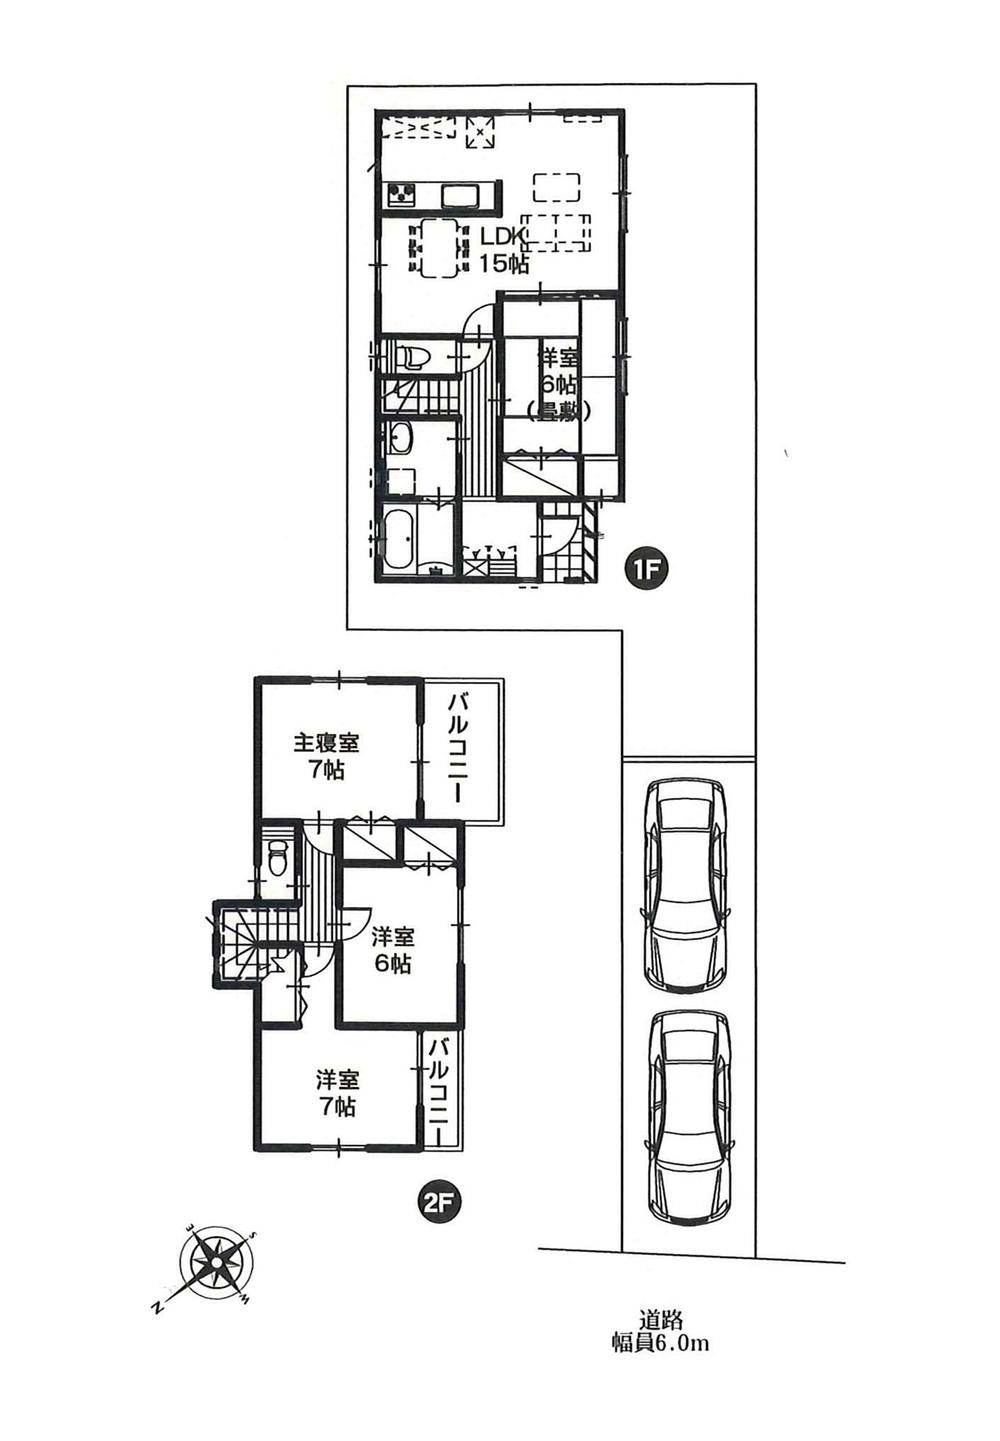 Floor plan. 15.9 million yen, 4LDK, Land area 154.1 sq m , Building area 97.7 sq m